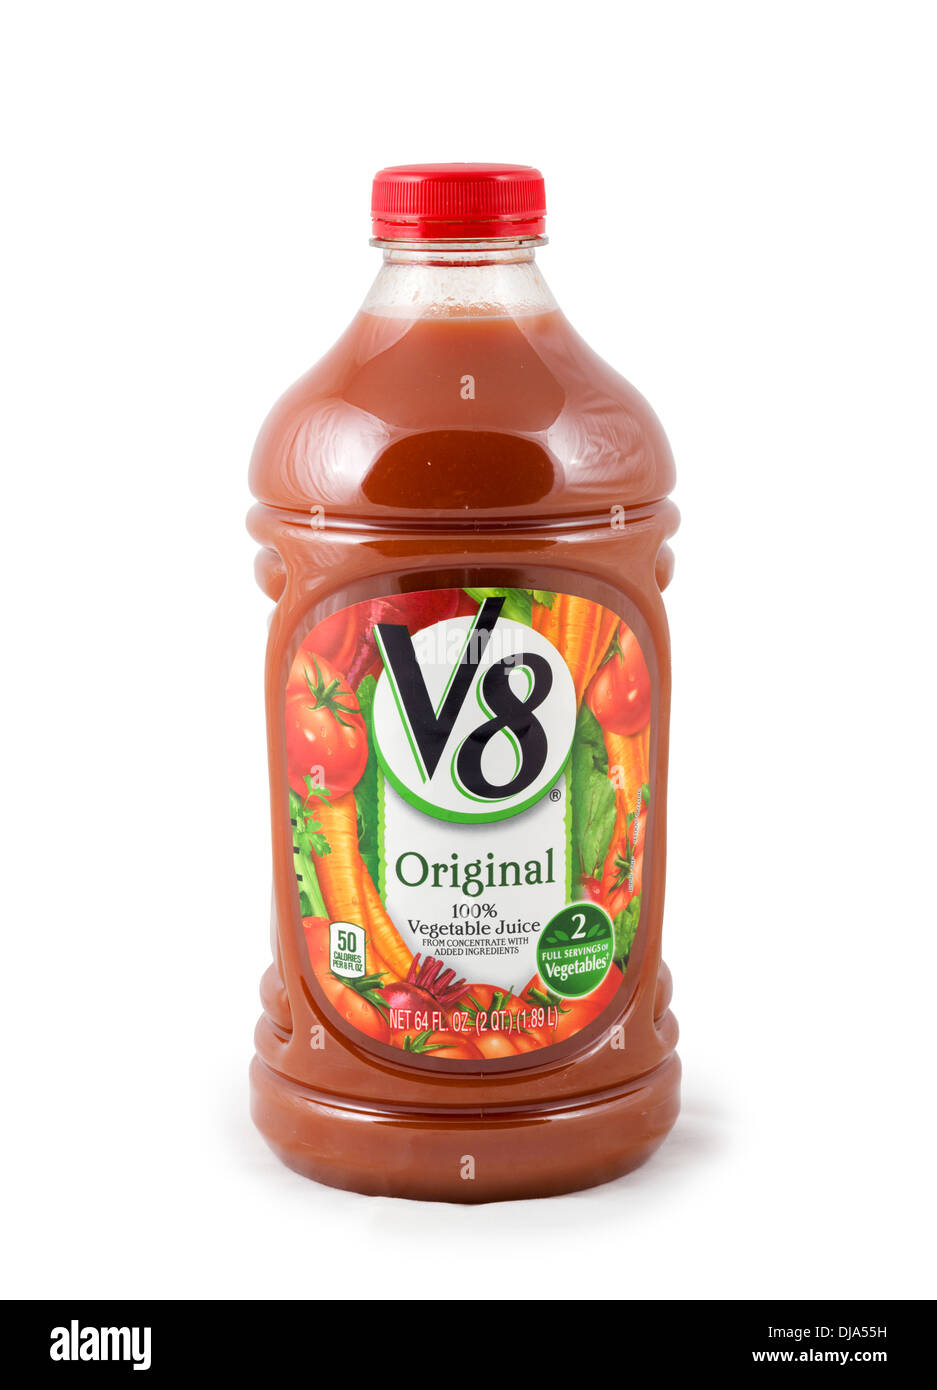 Botella de jugo vegetal original V8, EE.UU. Foto de stock